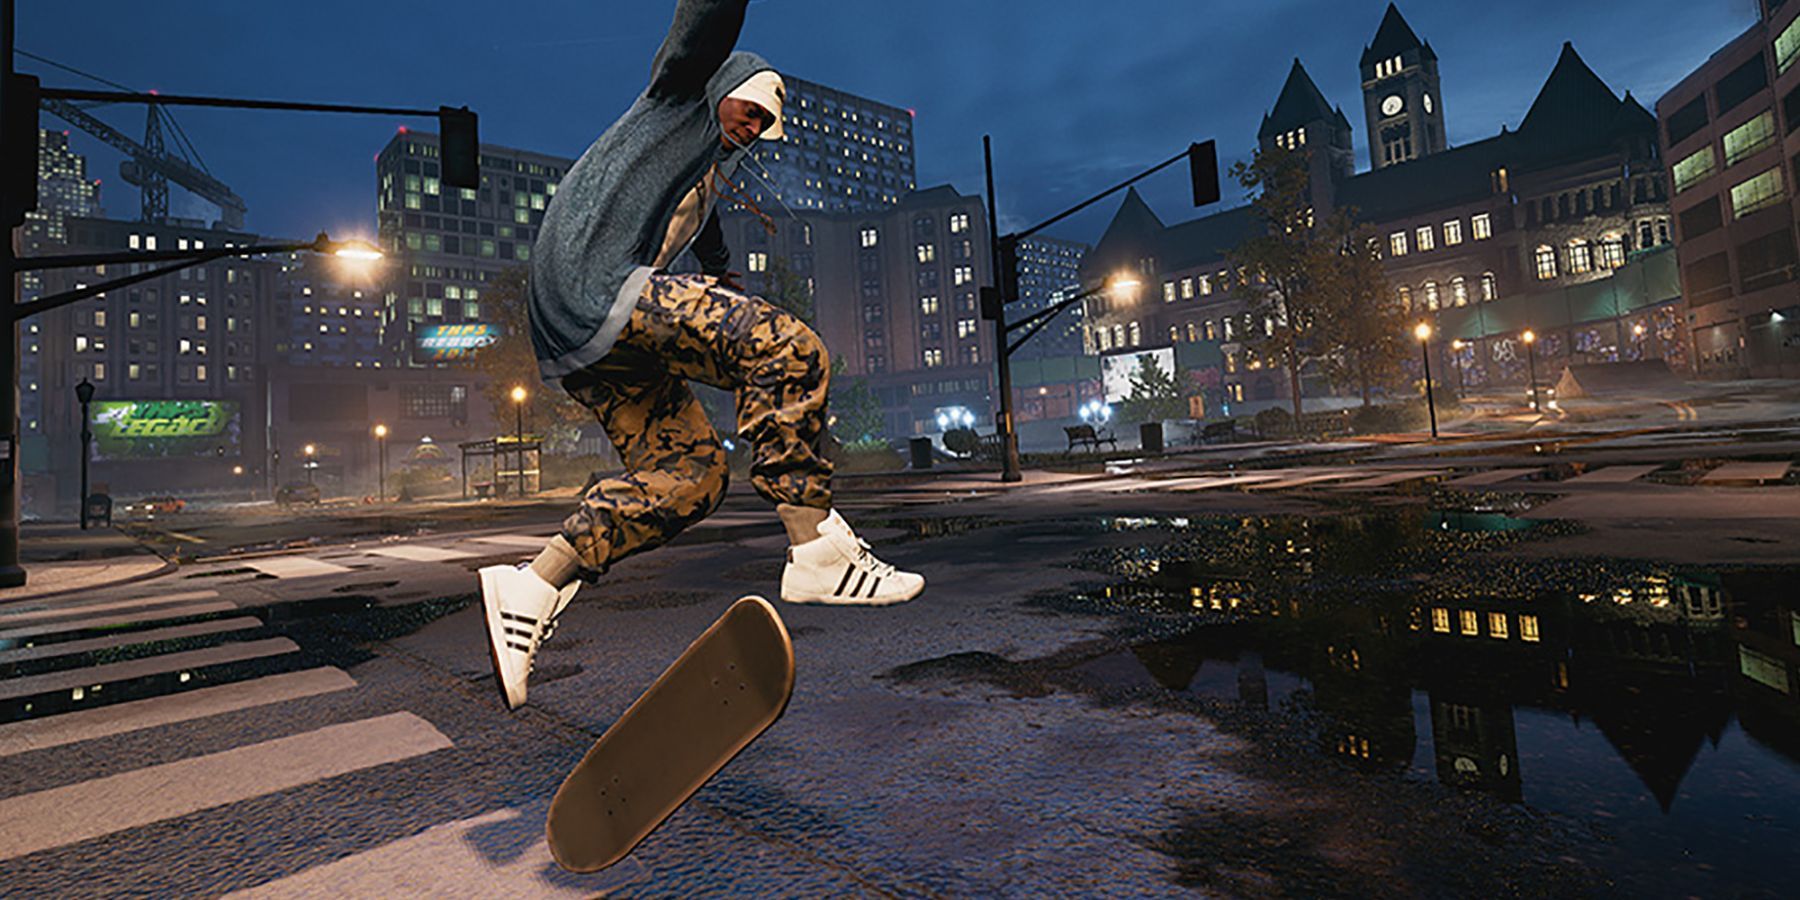 A skater doing tricks on the street